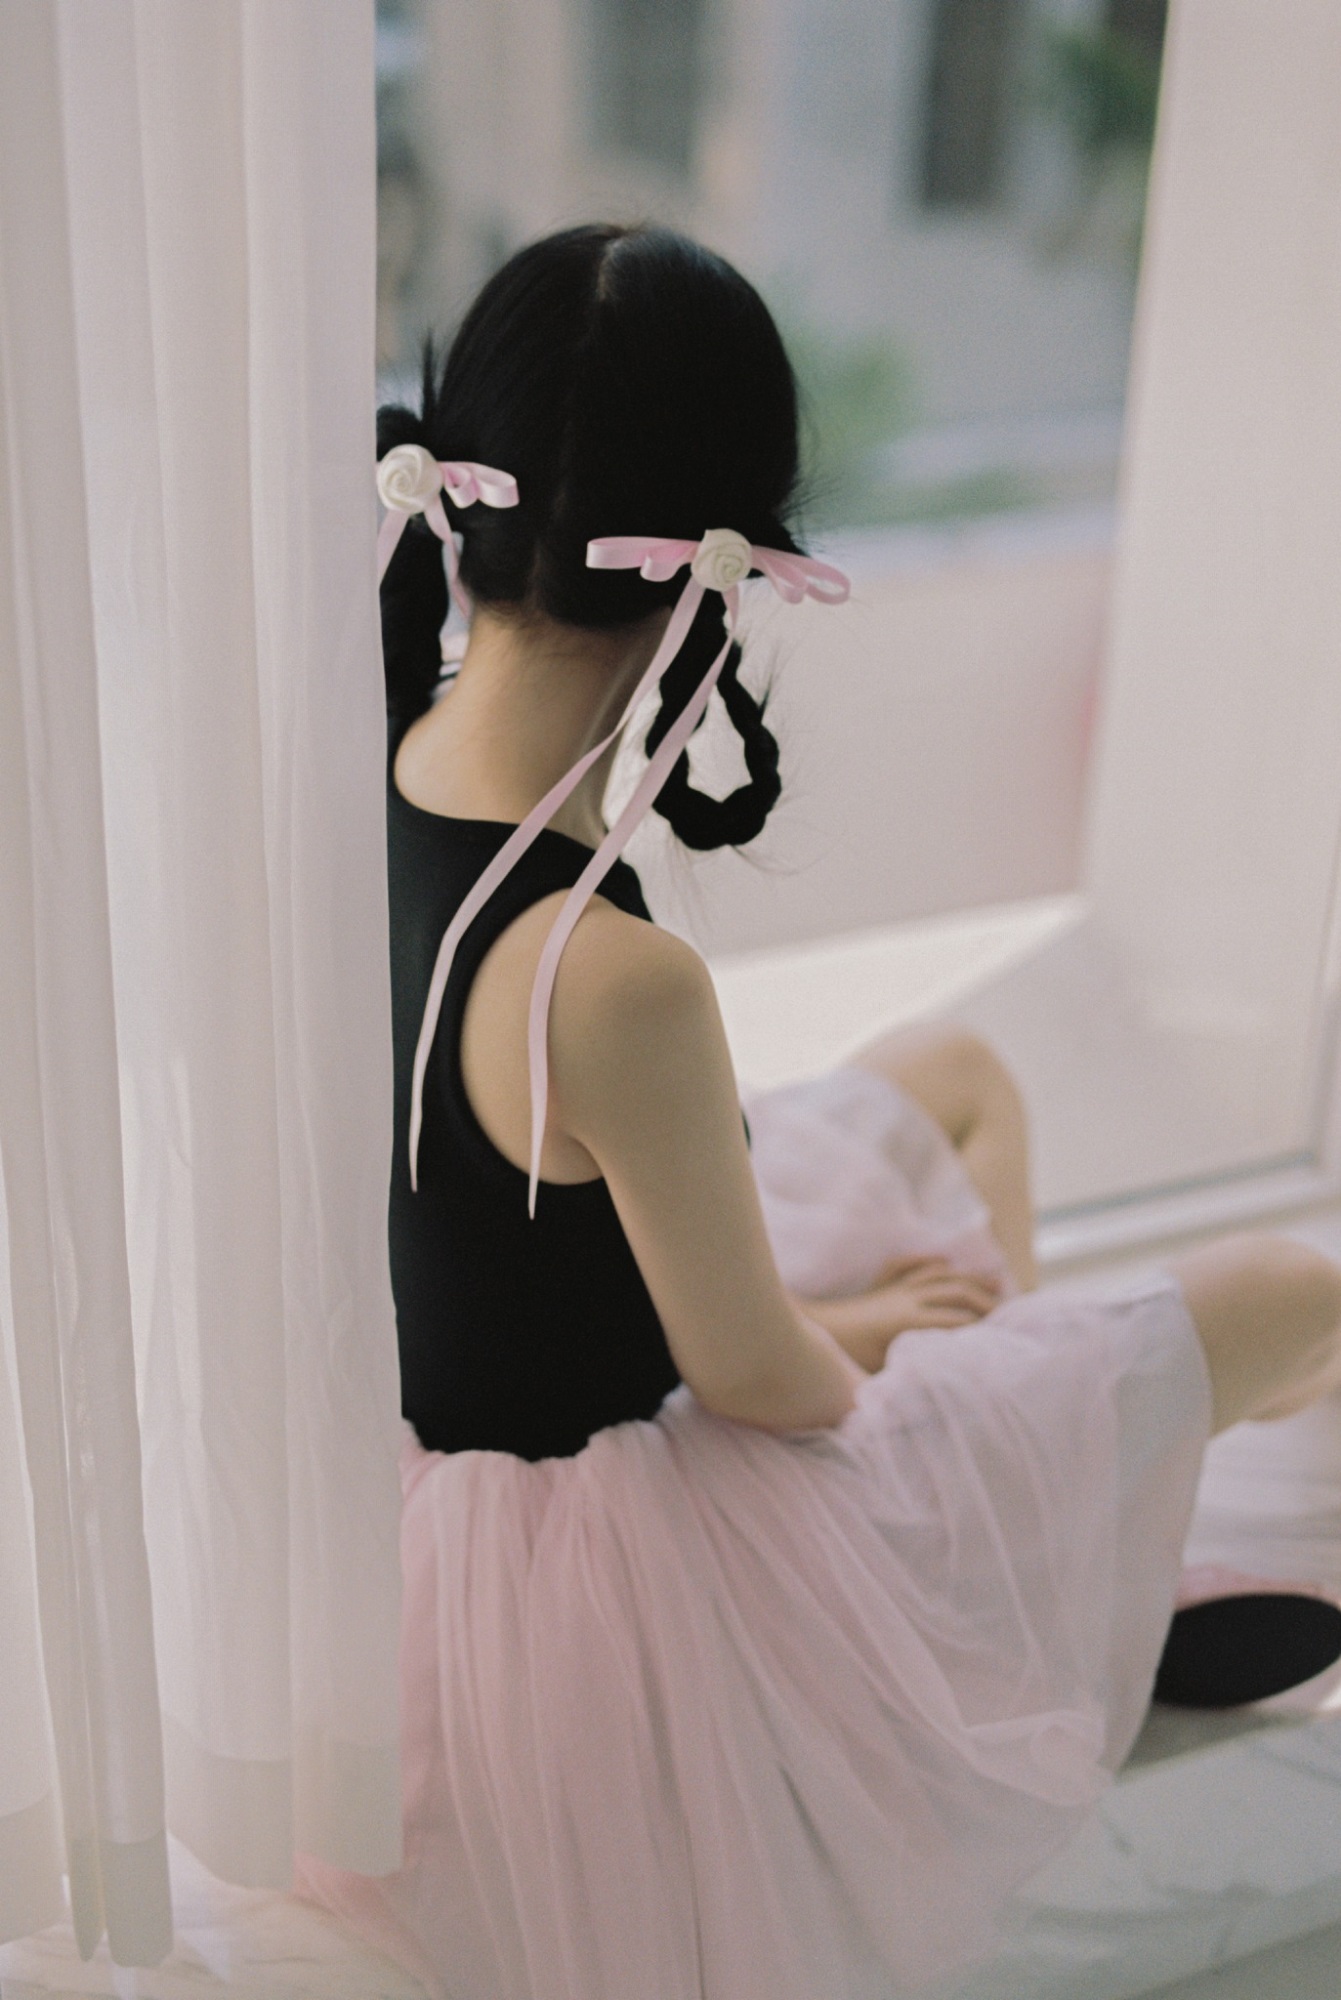 Ngu Thư Hân gây sốt khi bắt trend phong cách 'balletcore' trong bộ ảnh mới - Ảnh 9